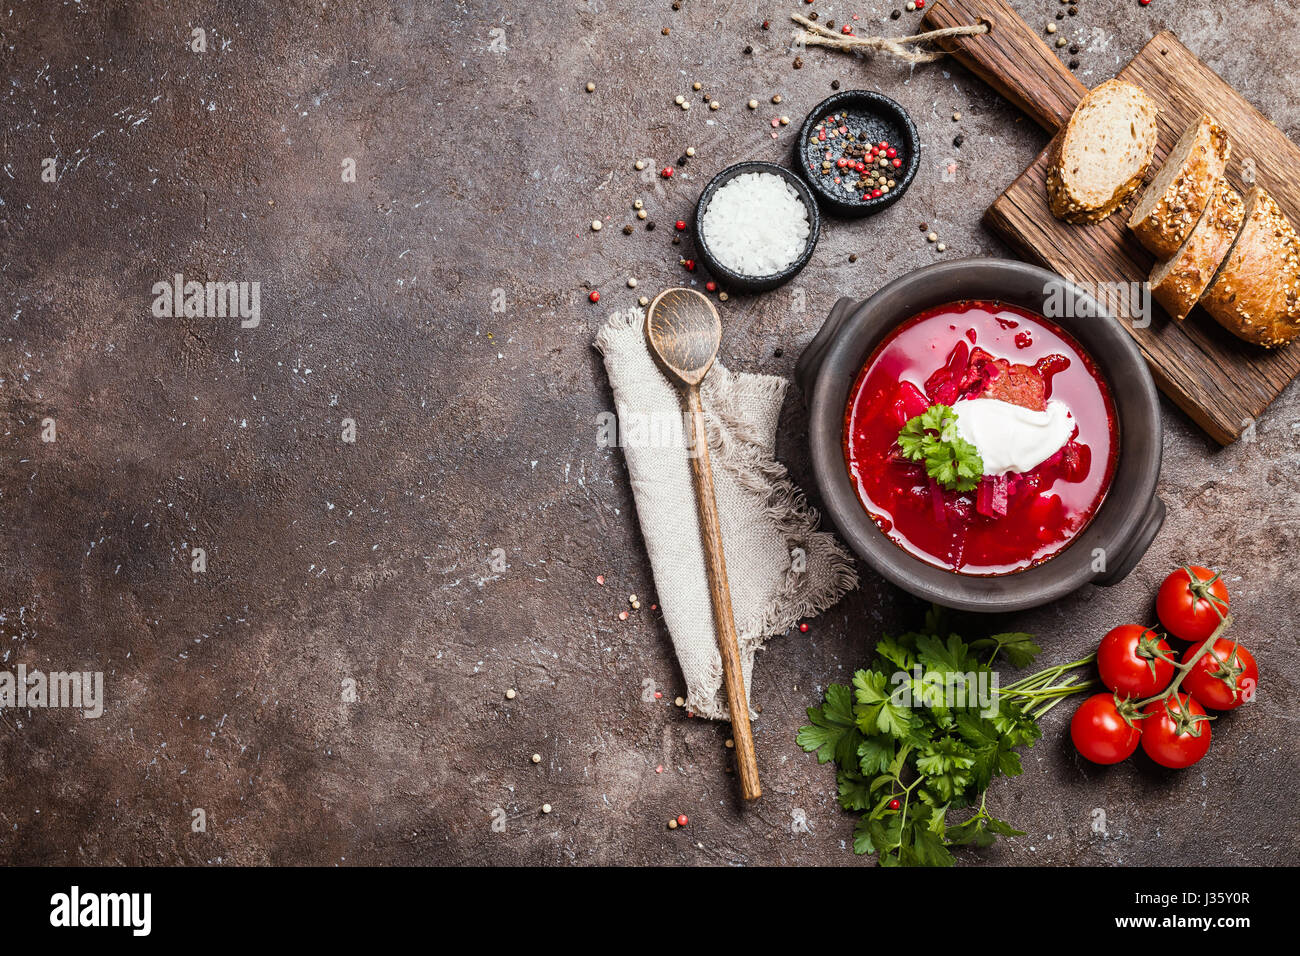 Russian soup - red borscht Stock Photo